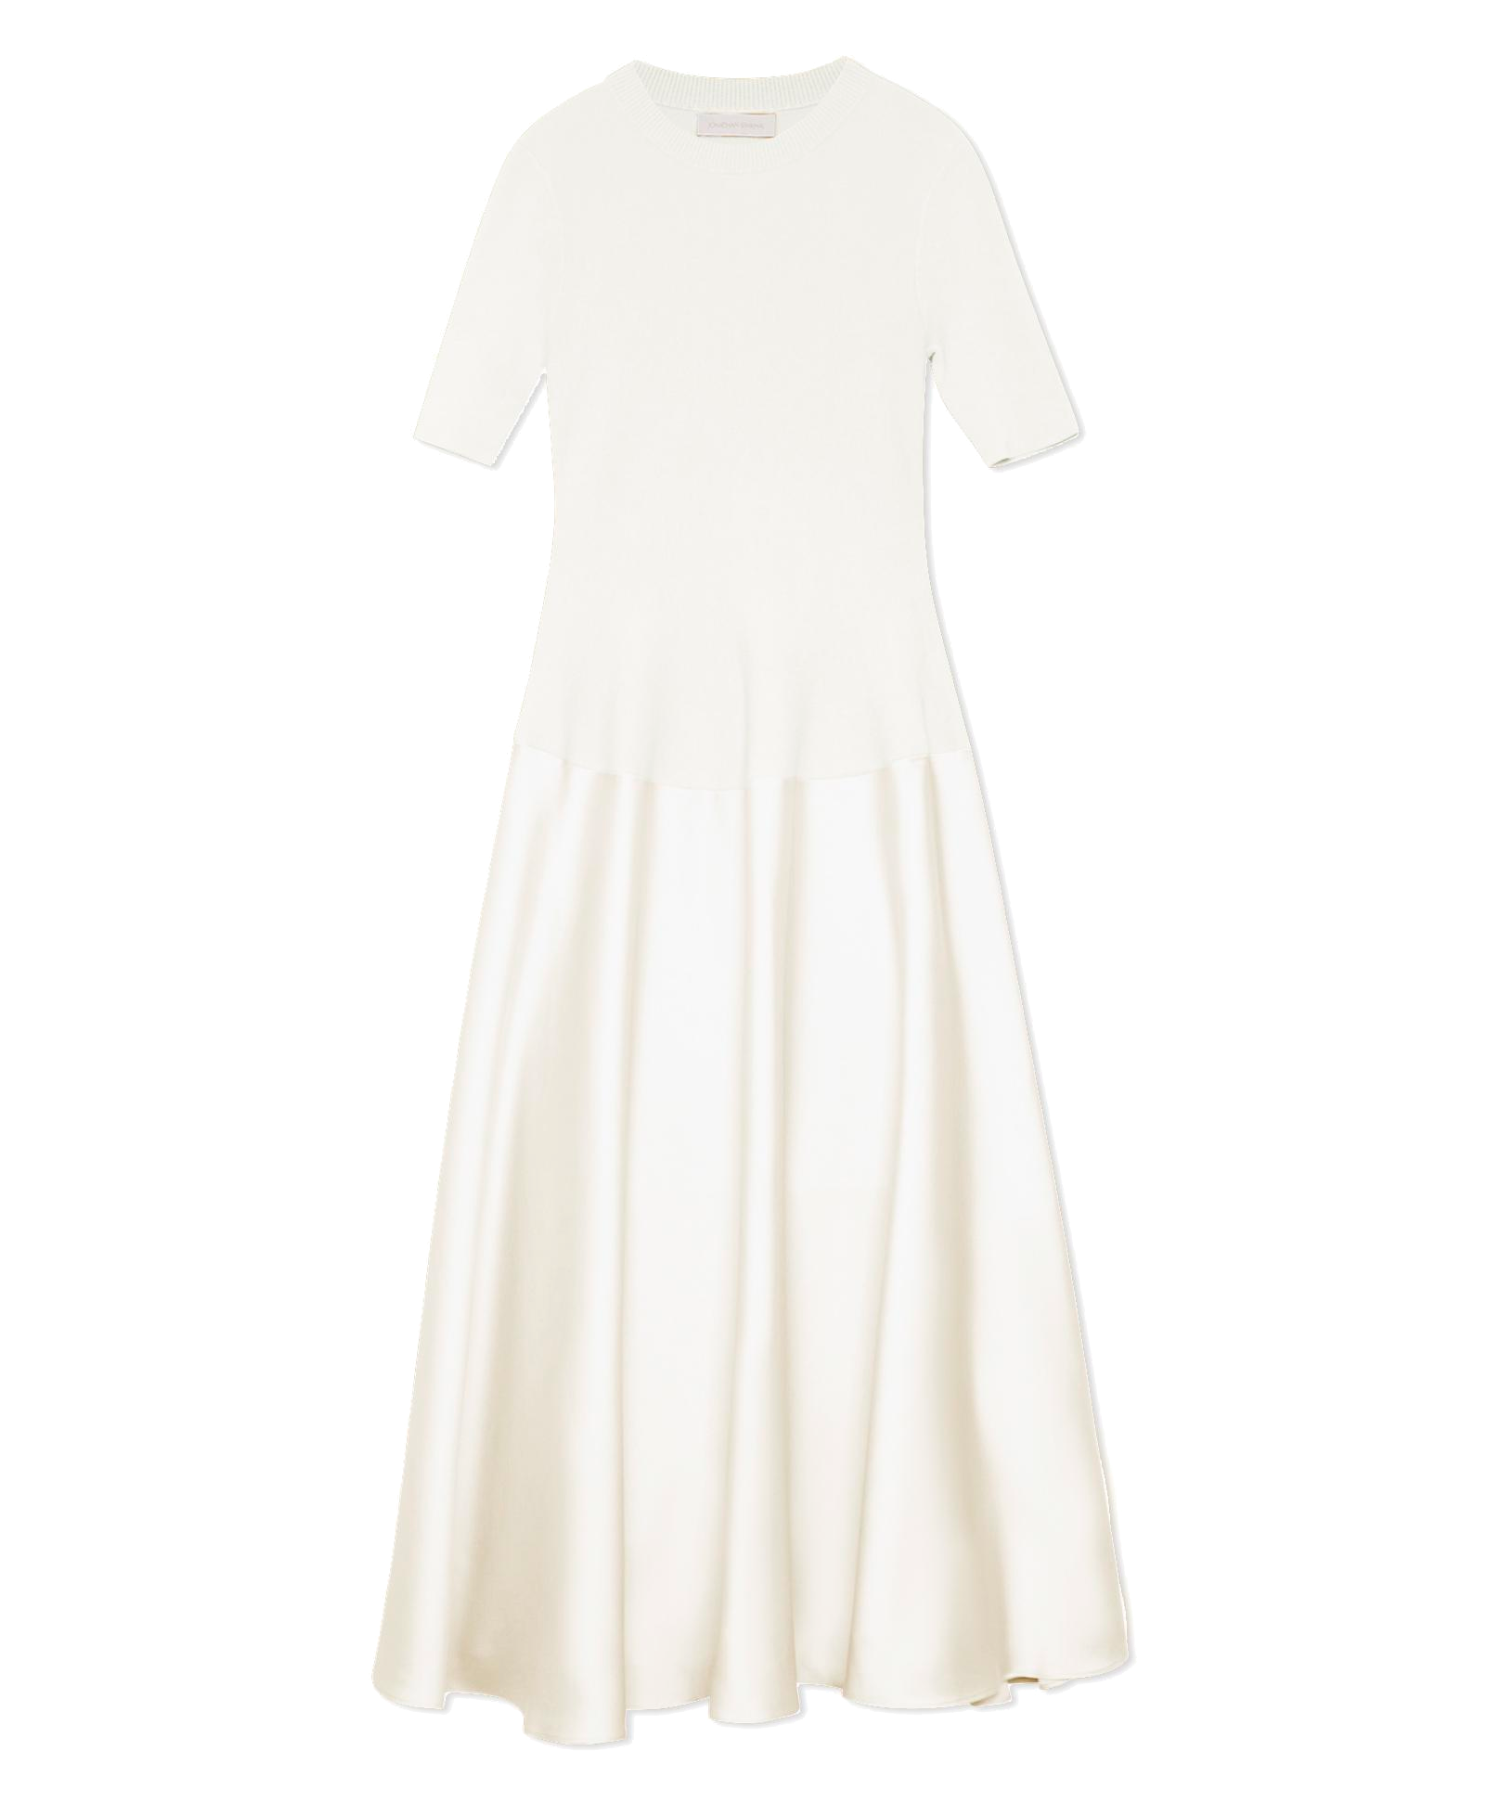 Simkhai Natural White Marionne Dress